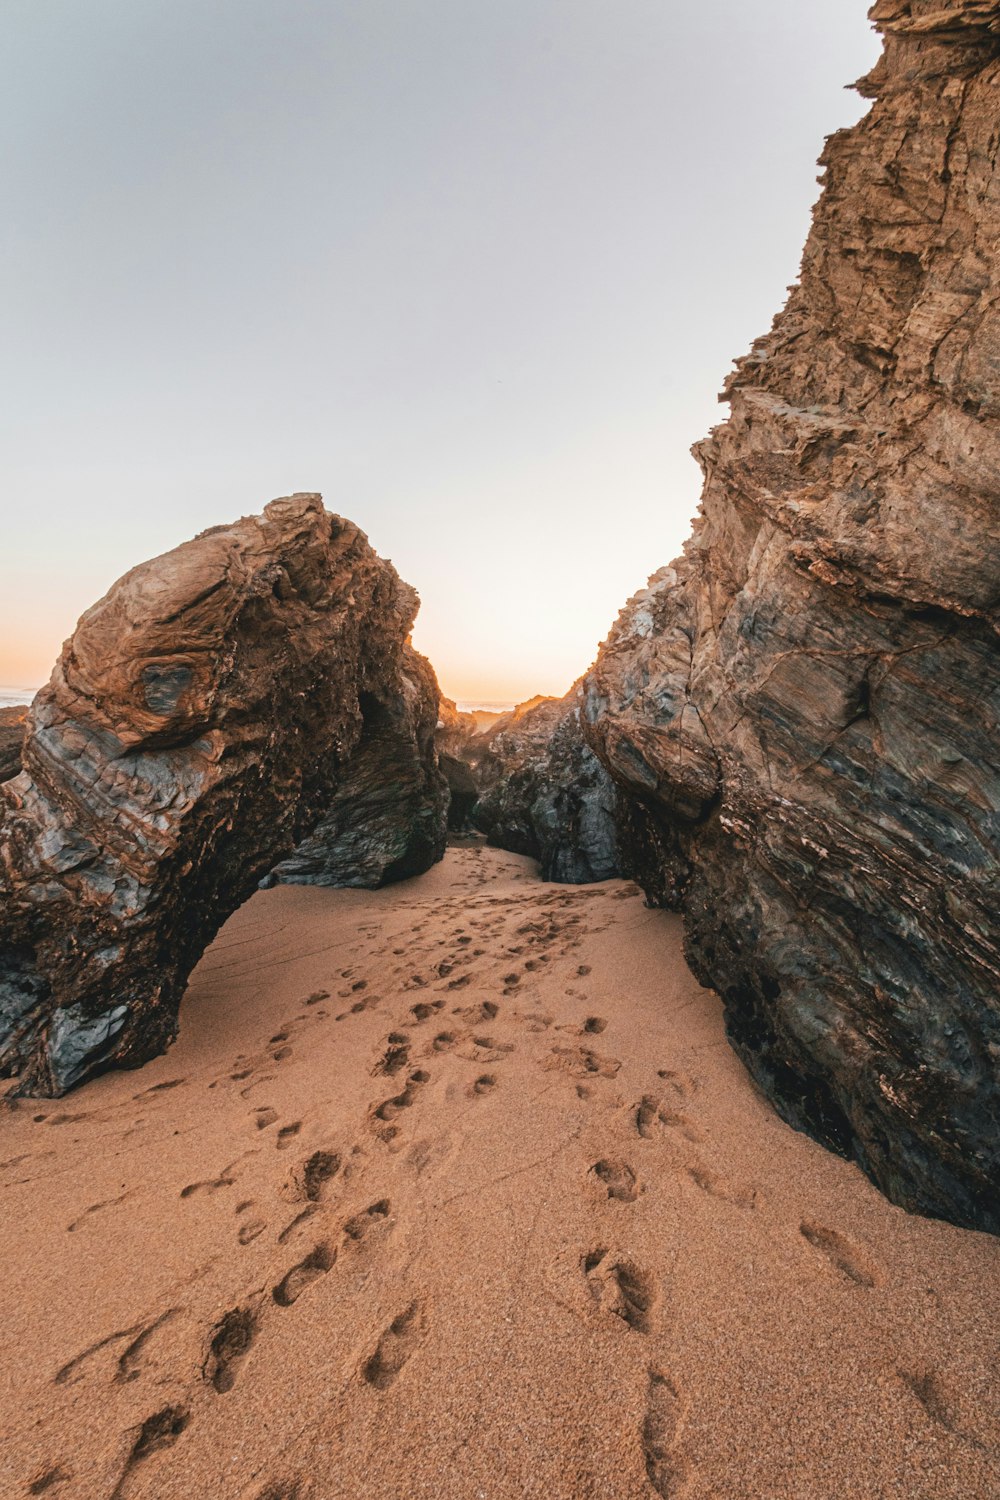 footprints in sand near rocks